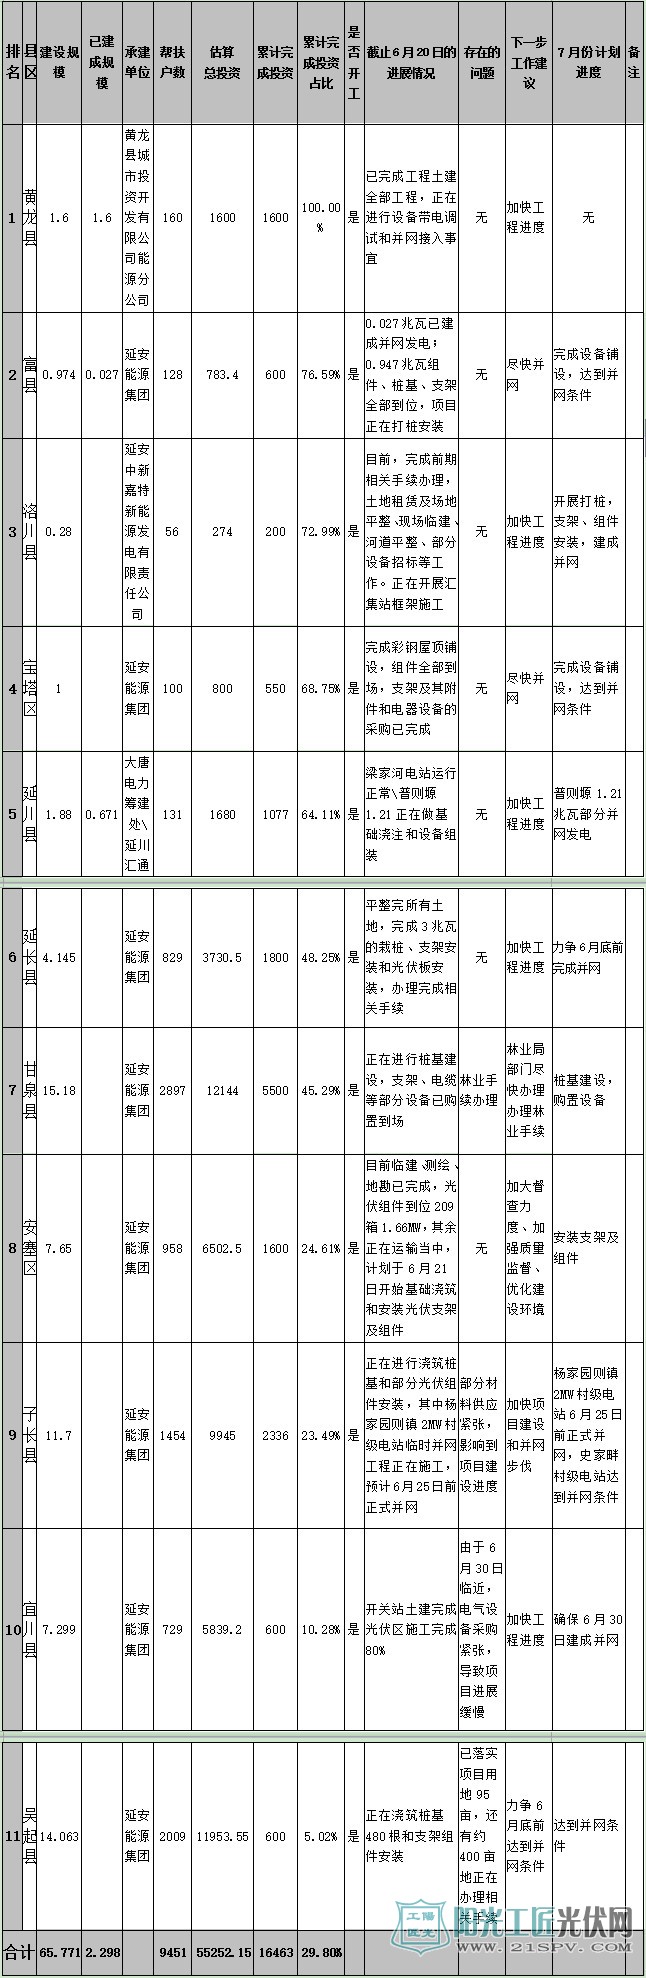 延安市光伏扶贫项目村级电站(包含户用系统)6月份进度情况汇总表  单位:兆瓦、万元